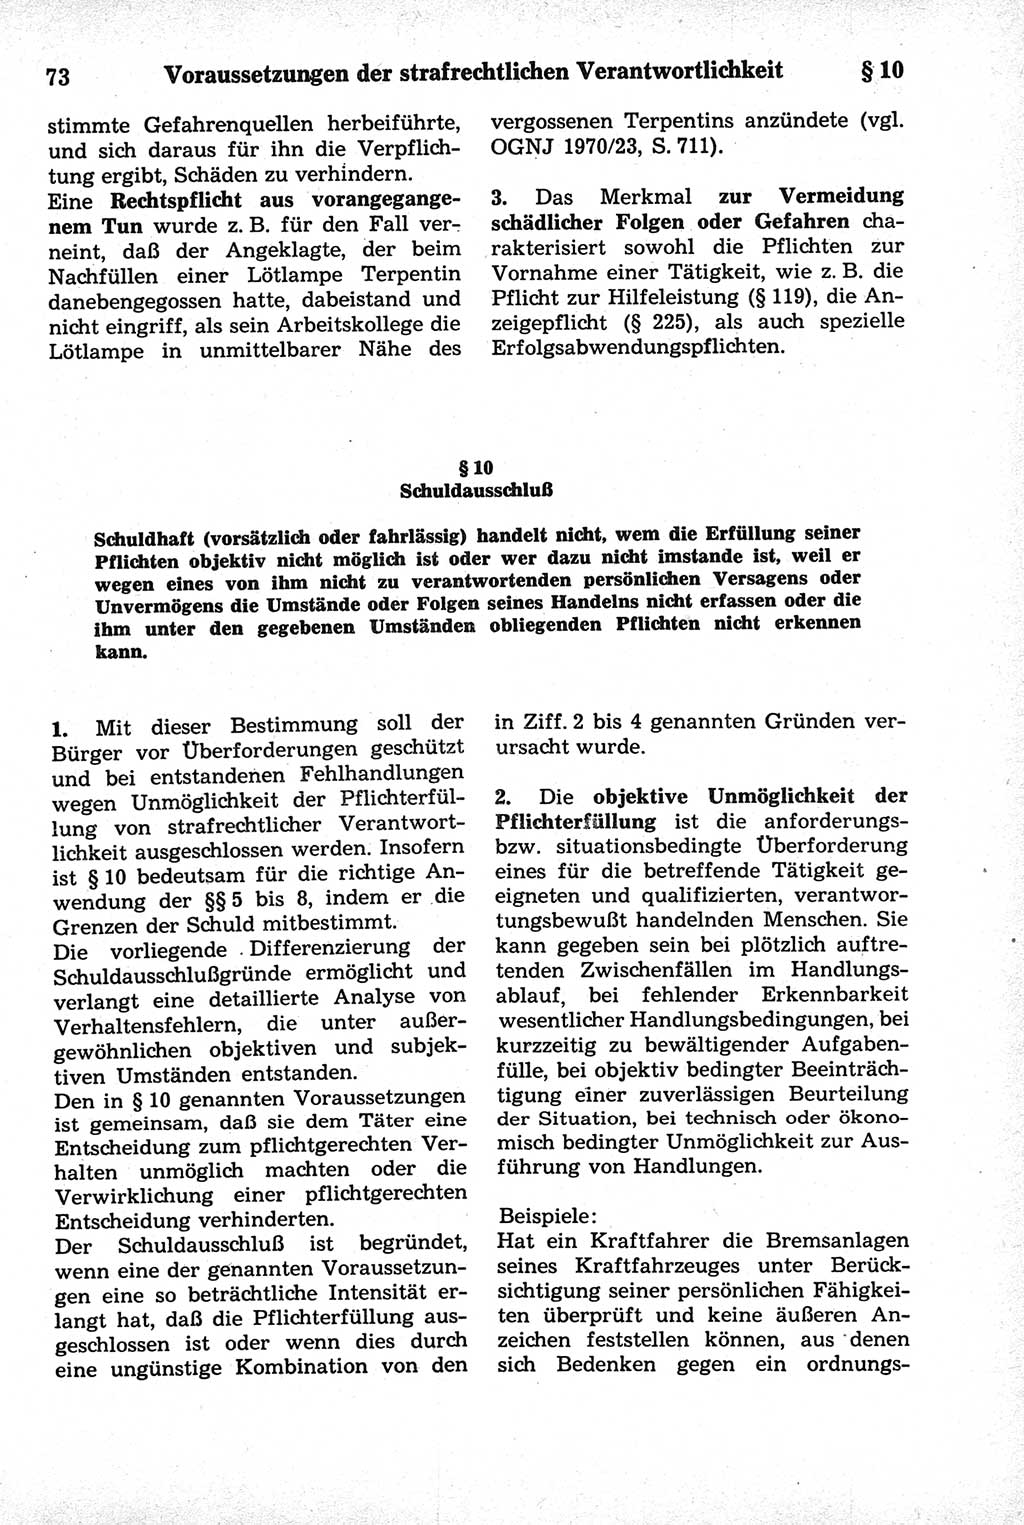 Strafrecht der Deutschen Demokratischen Republik (DDR), Kommentar zum Strafgesetzbuch (StGB) 1981, Seite 73 (Strafr. DDR Komm. StGB 1981, S. 73)